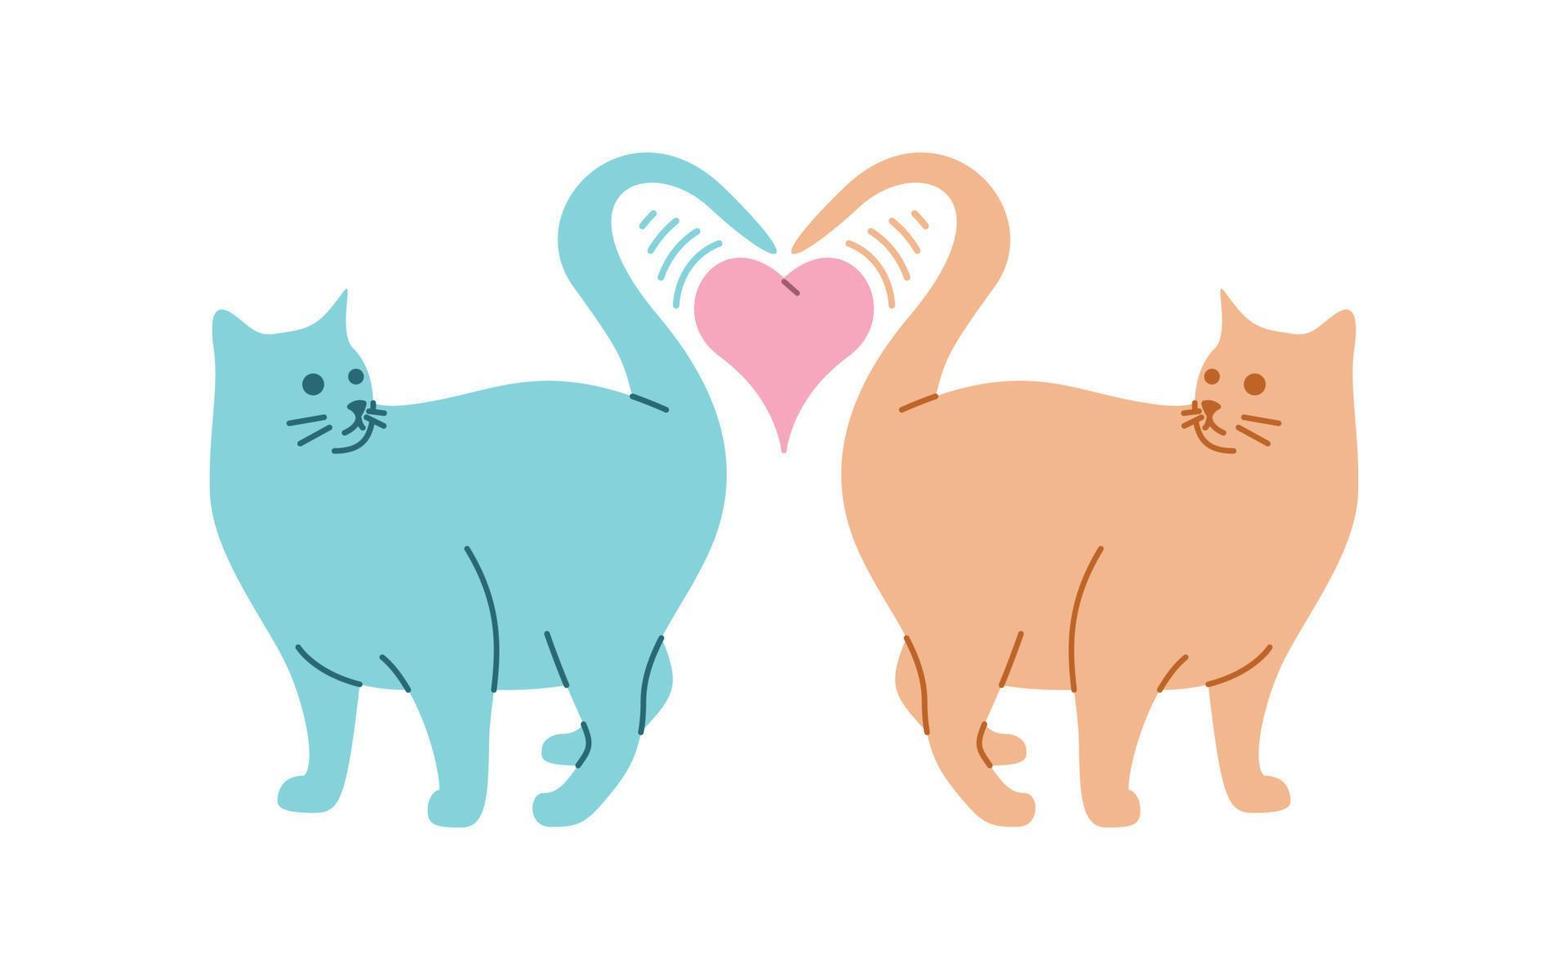 dois gatos se apaixonam por design vetorial, gatos adoráveis projetados em estilo colorido e engraçado vetor